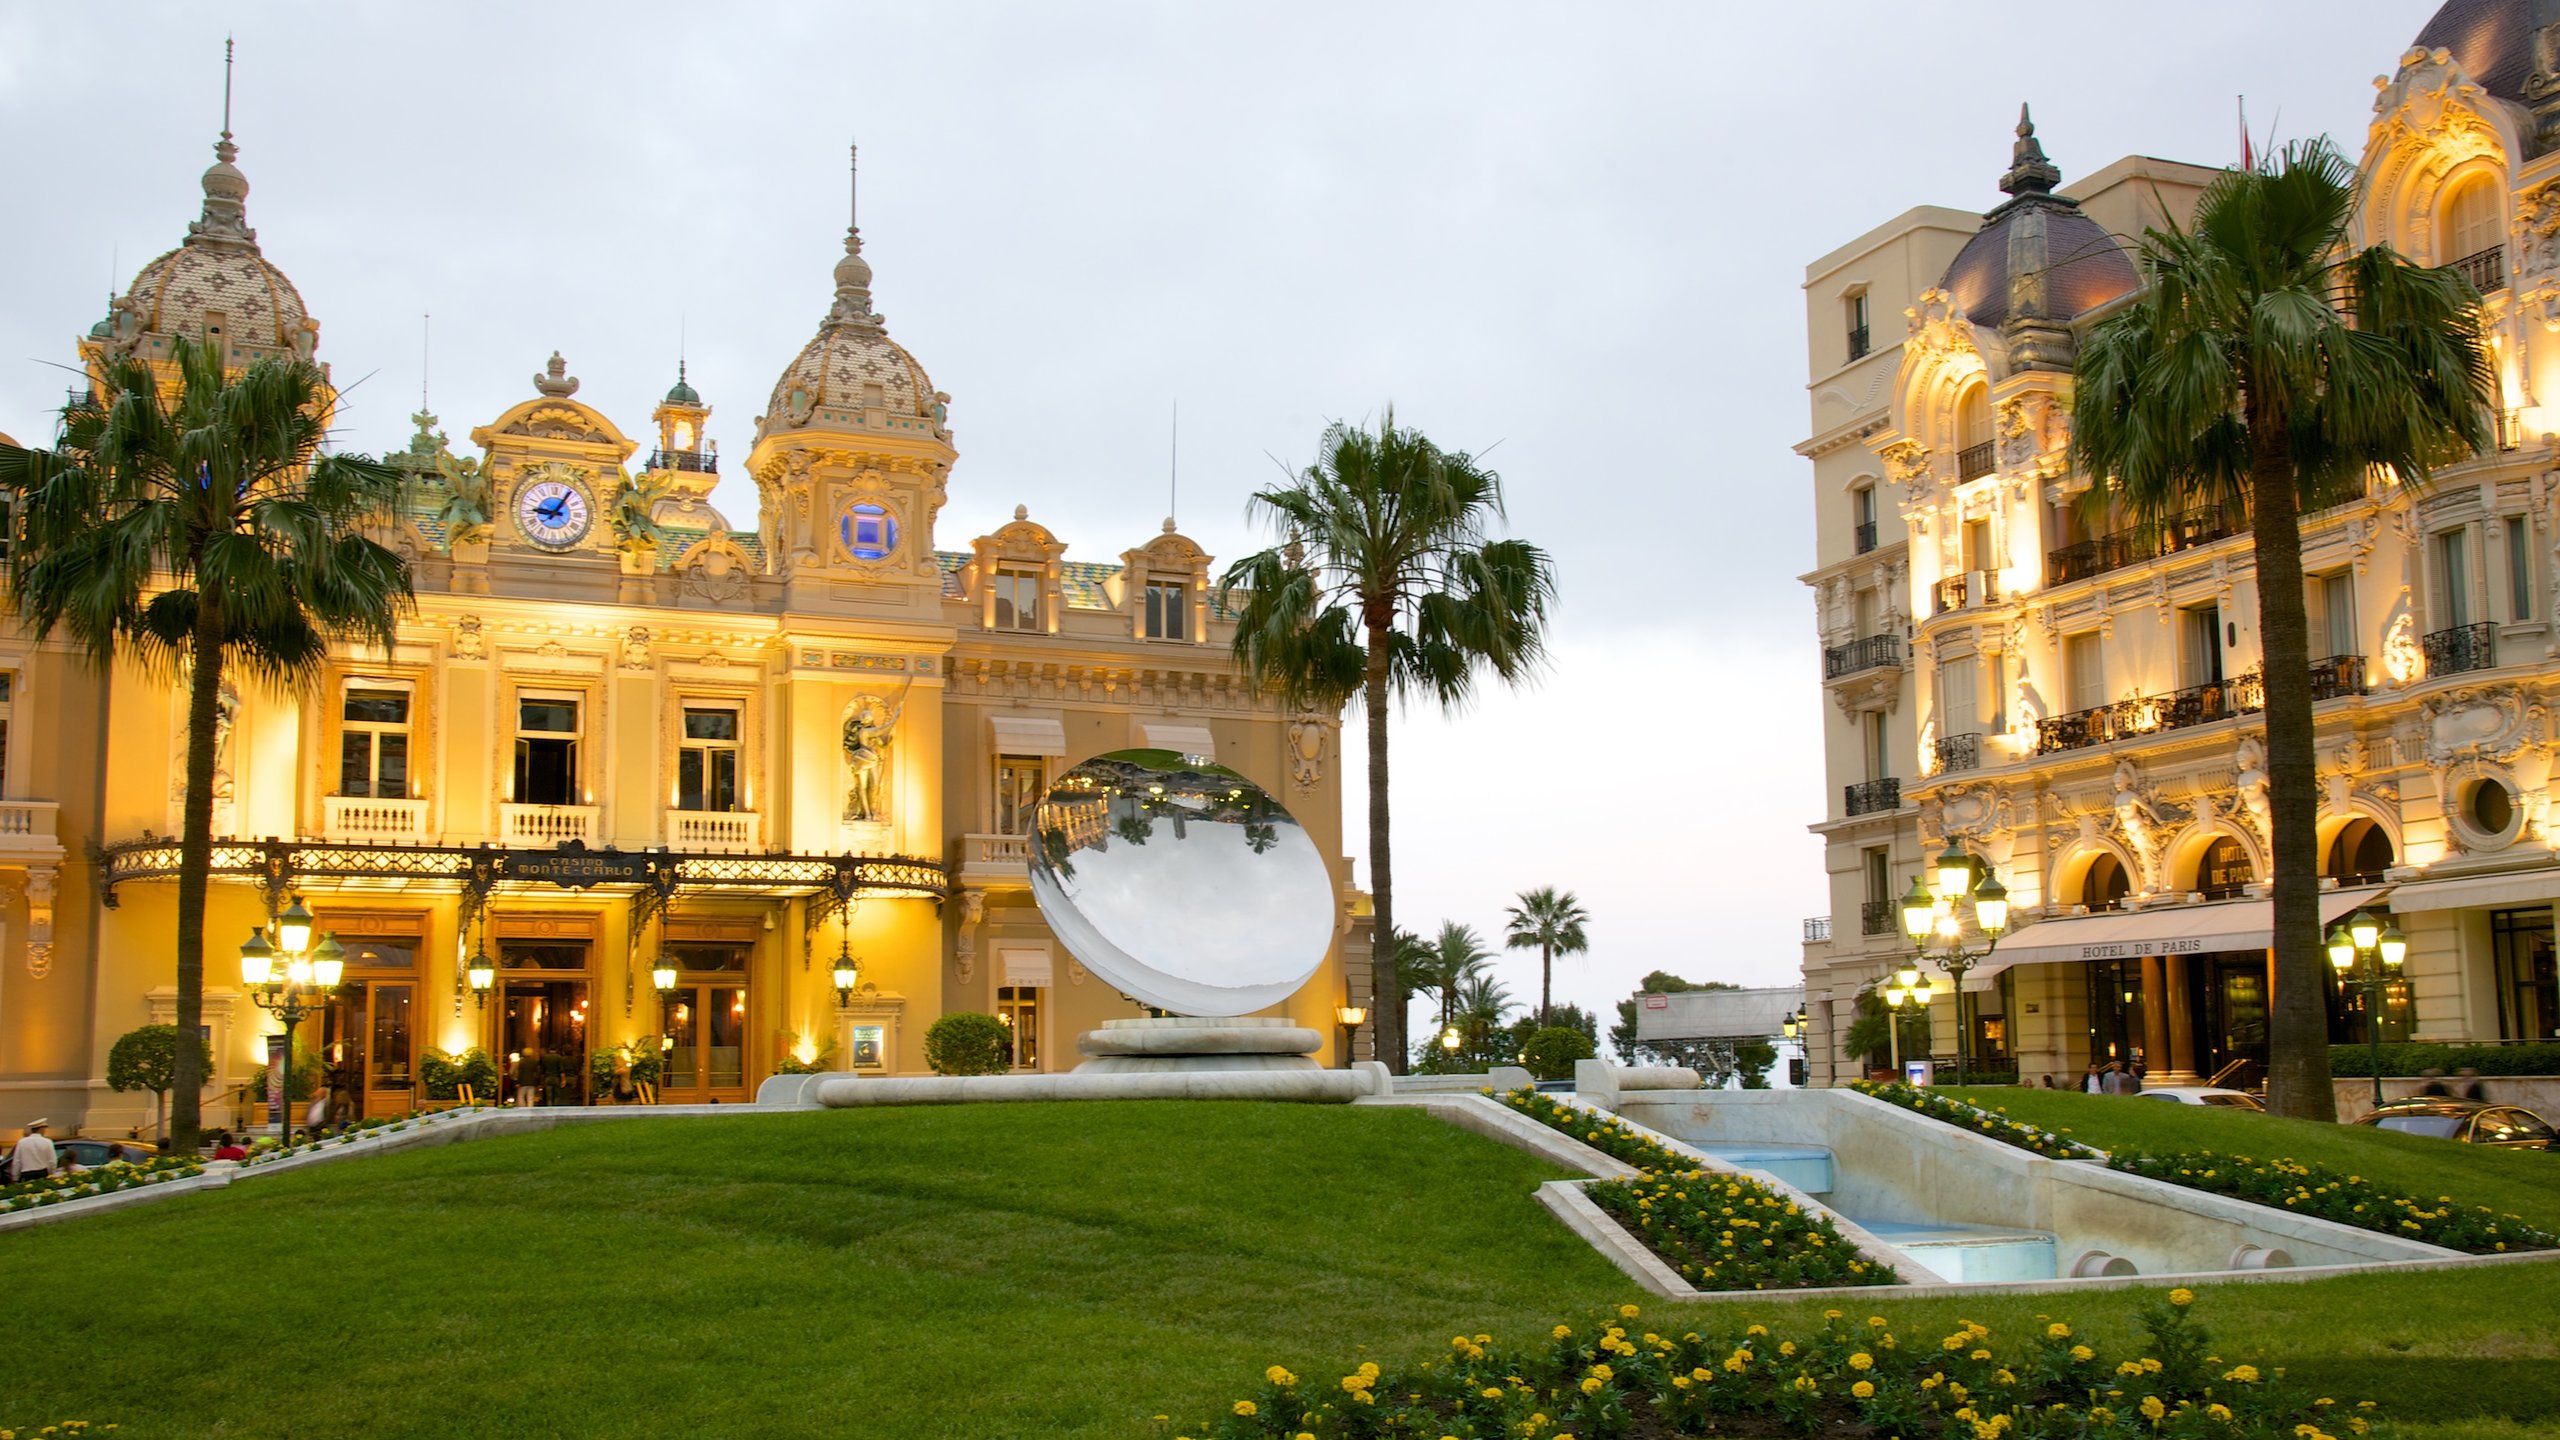 Casino Square, Monte Carlo, Monaco, MC